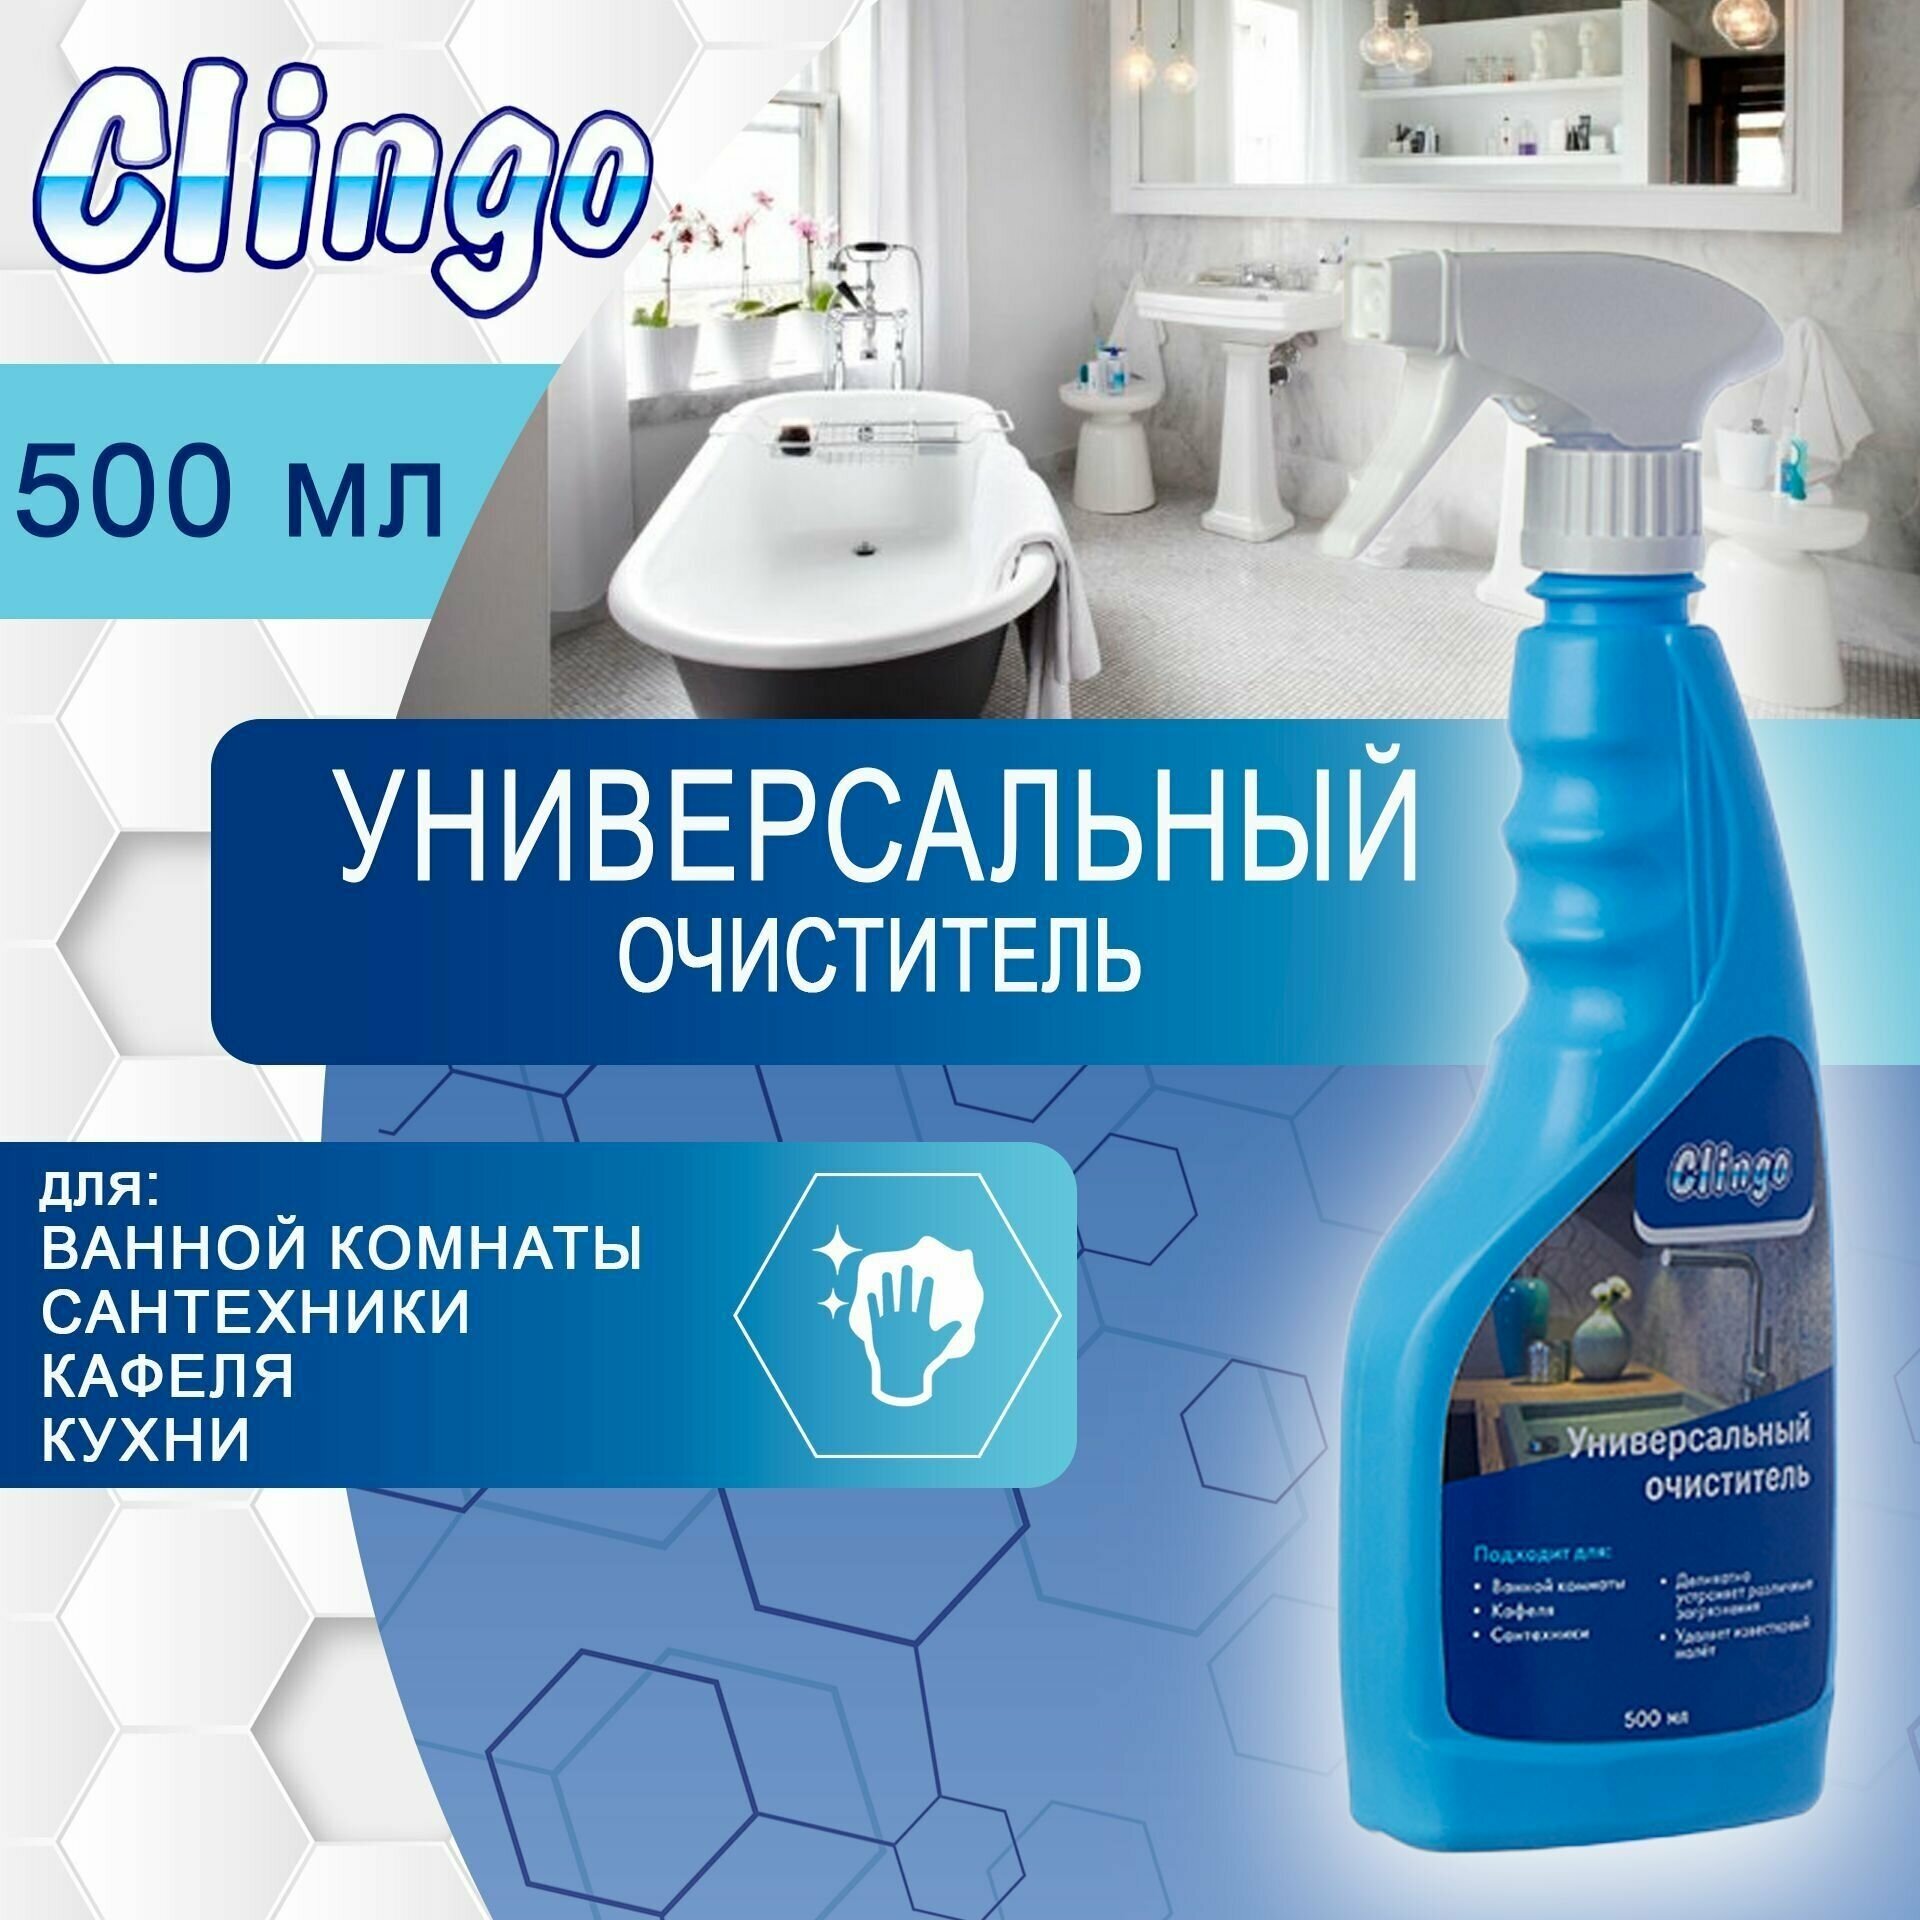 Универсальное чистящее средство Clingo, спрей очиститель для уборки дома, кухни, туалета и ванной 500 мл арт. 990012